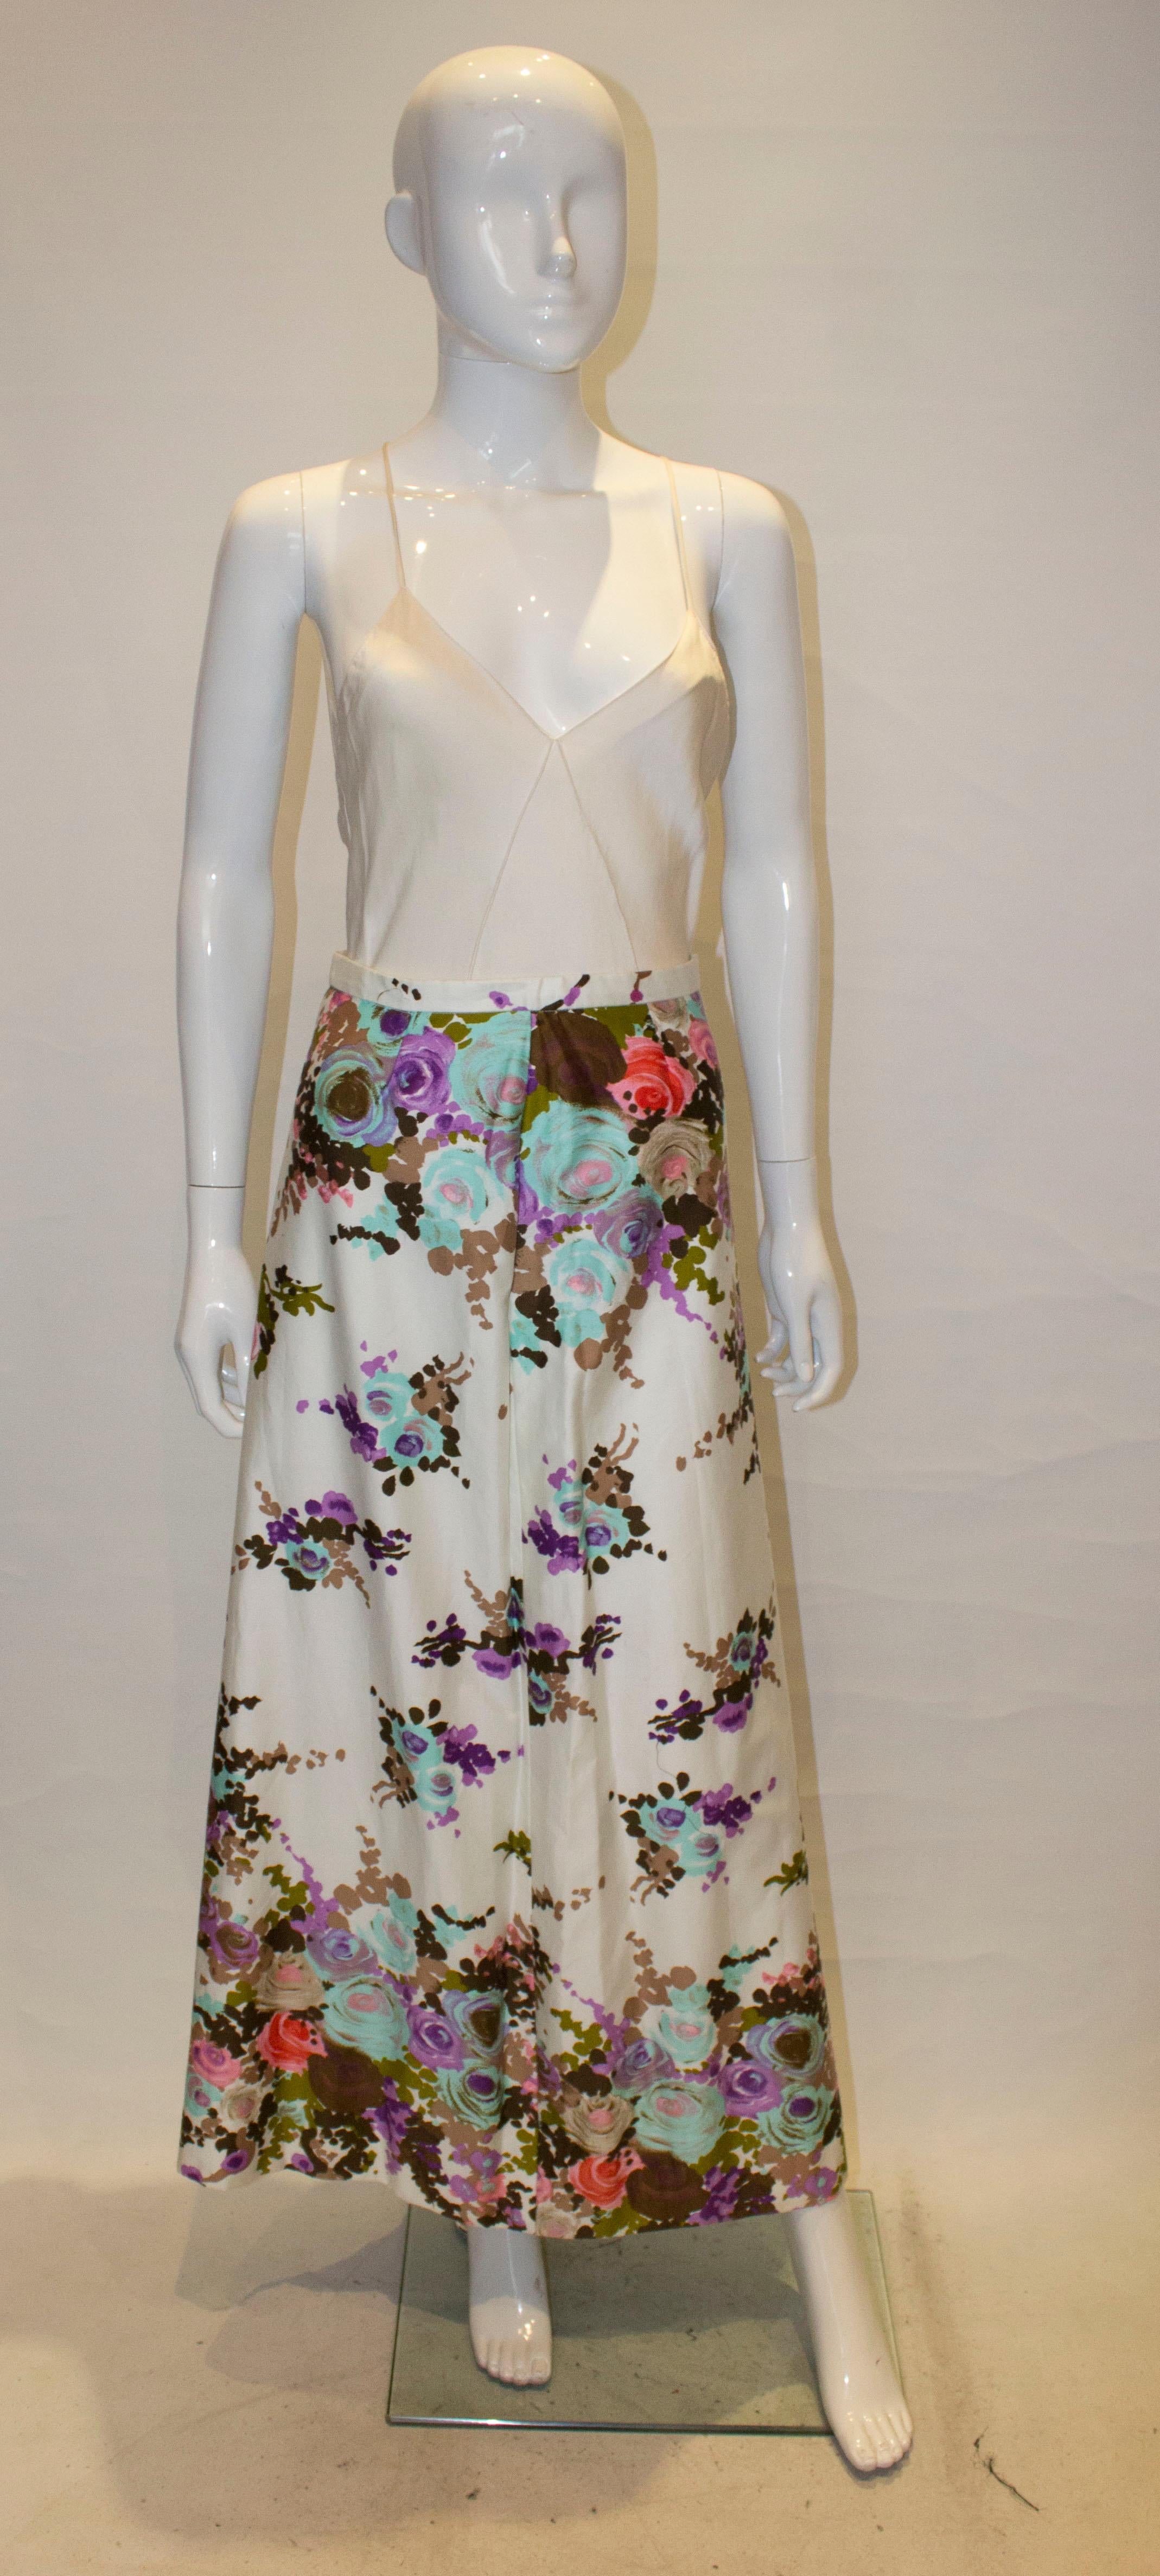 Une jolie jupe pour une soirée de printemps/été.  La jupe est en coton fleuri  avec une ouverture zippée sur le côté gauche. Il est entièrement doublé.